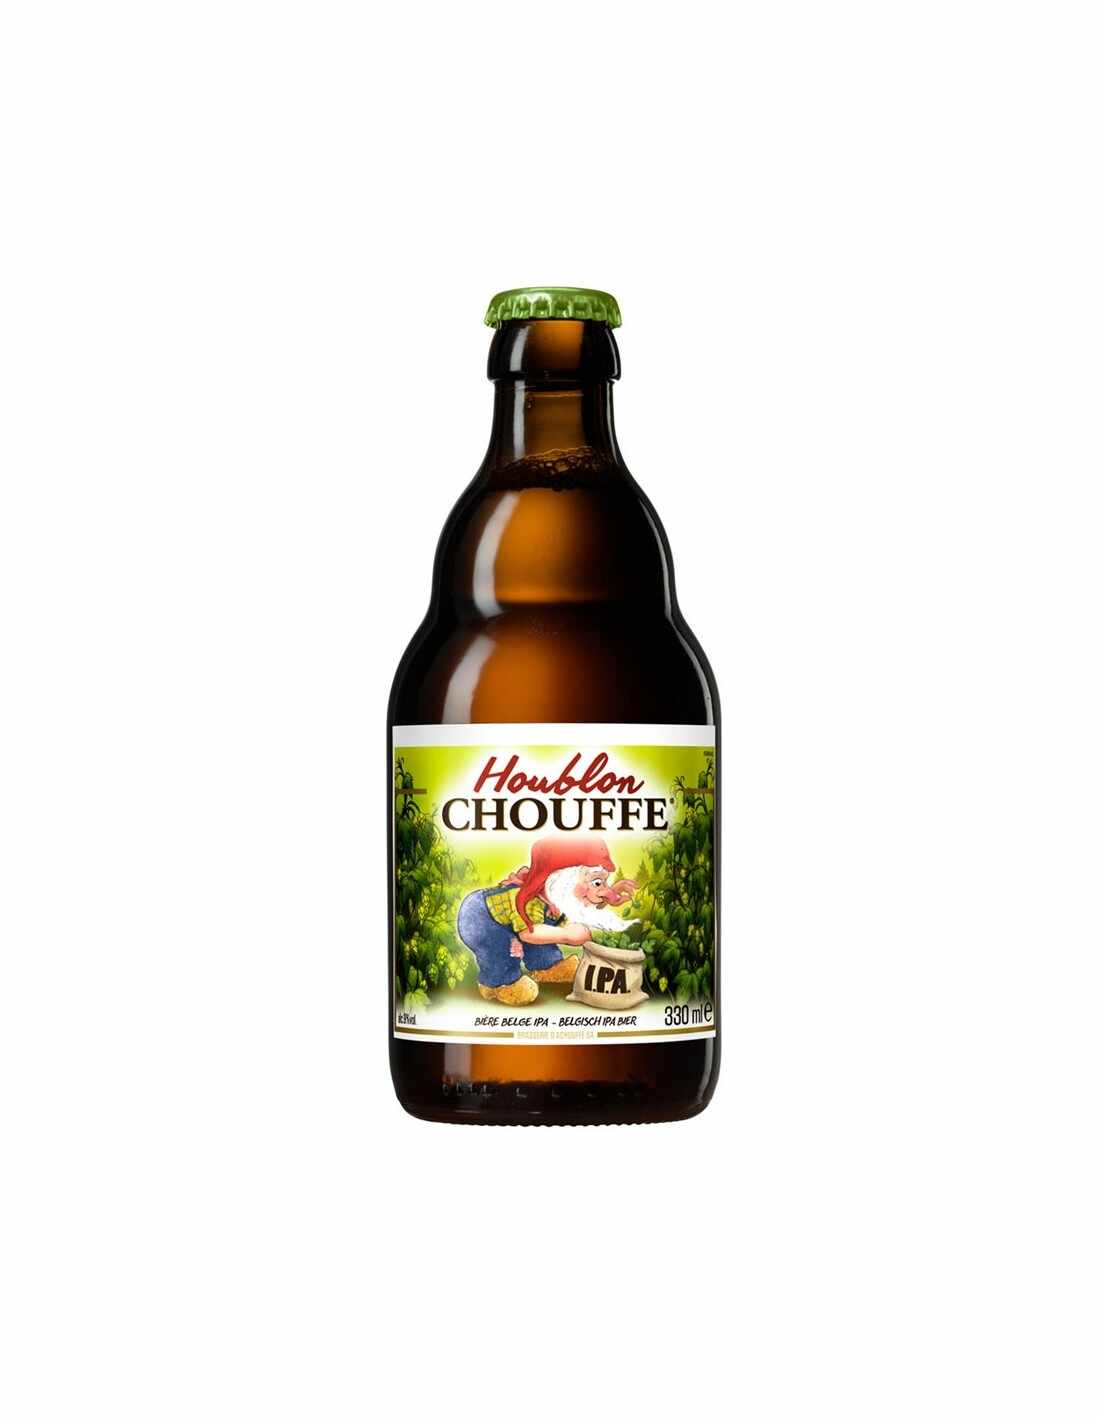 Bere blonda, nefiltrata Chouffe Houblon, 9% alc., 0.33L, Belgia